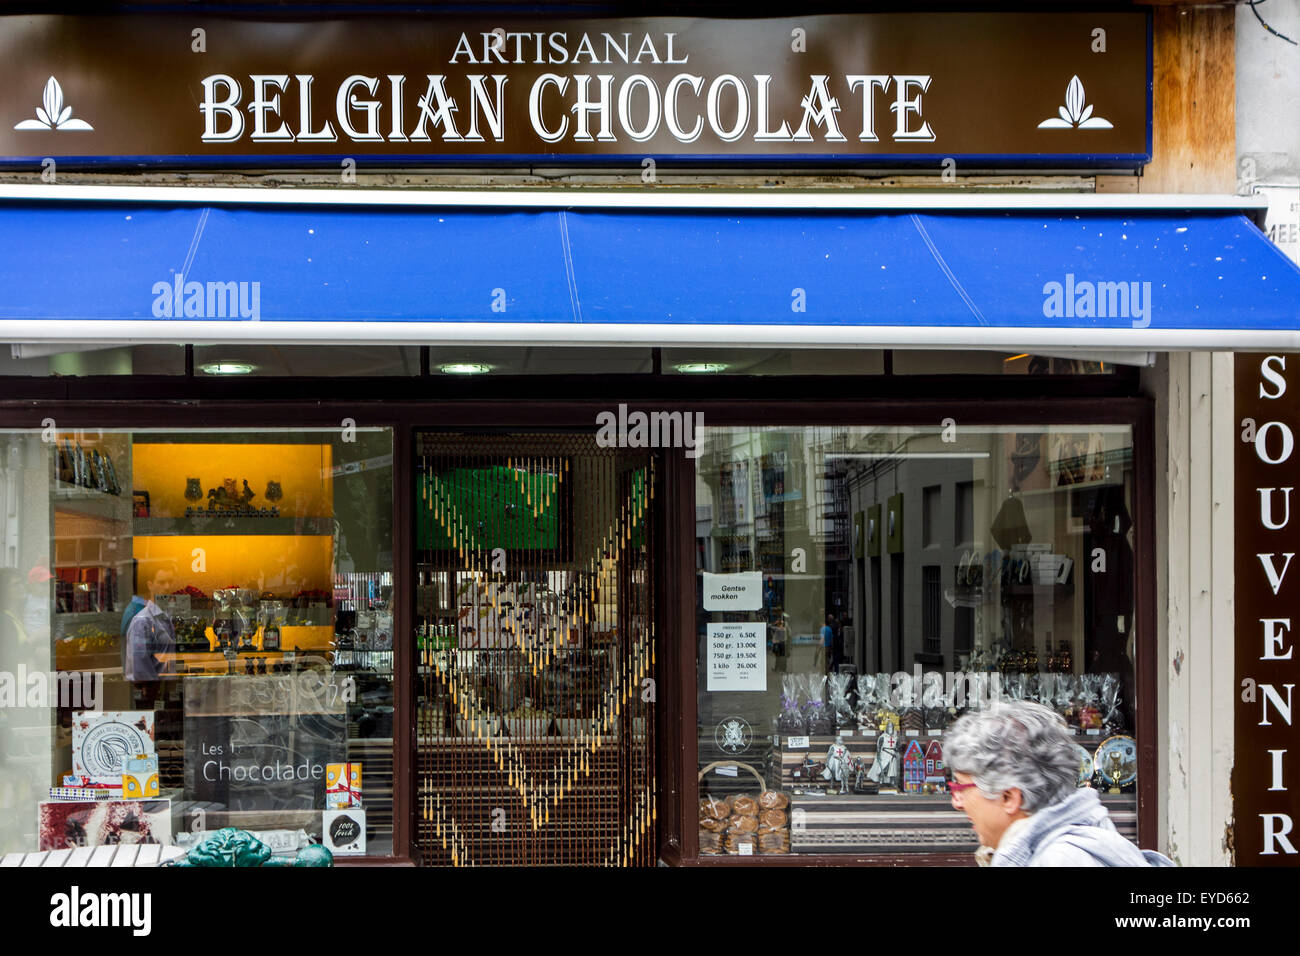 Chocolatería artesanal del chocolate belga tienda de venta de variedades de pralines y confitería Foto de stock